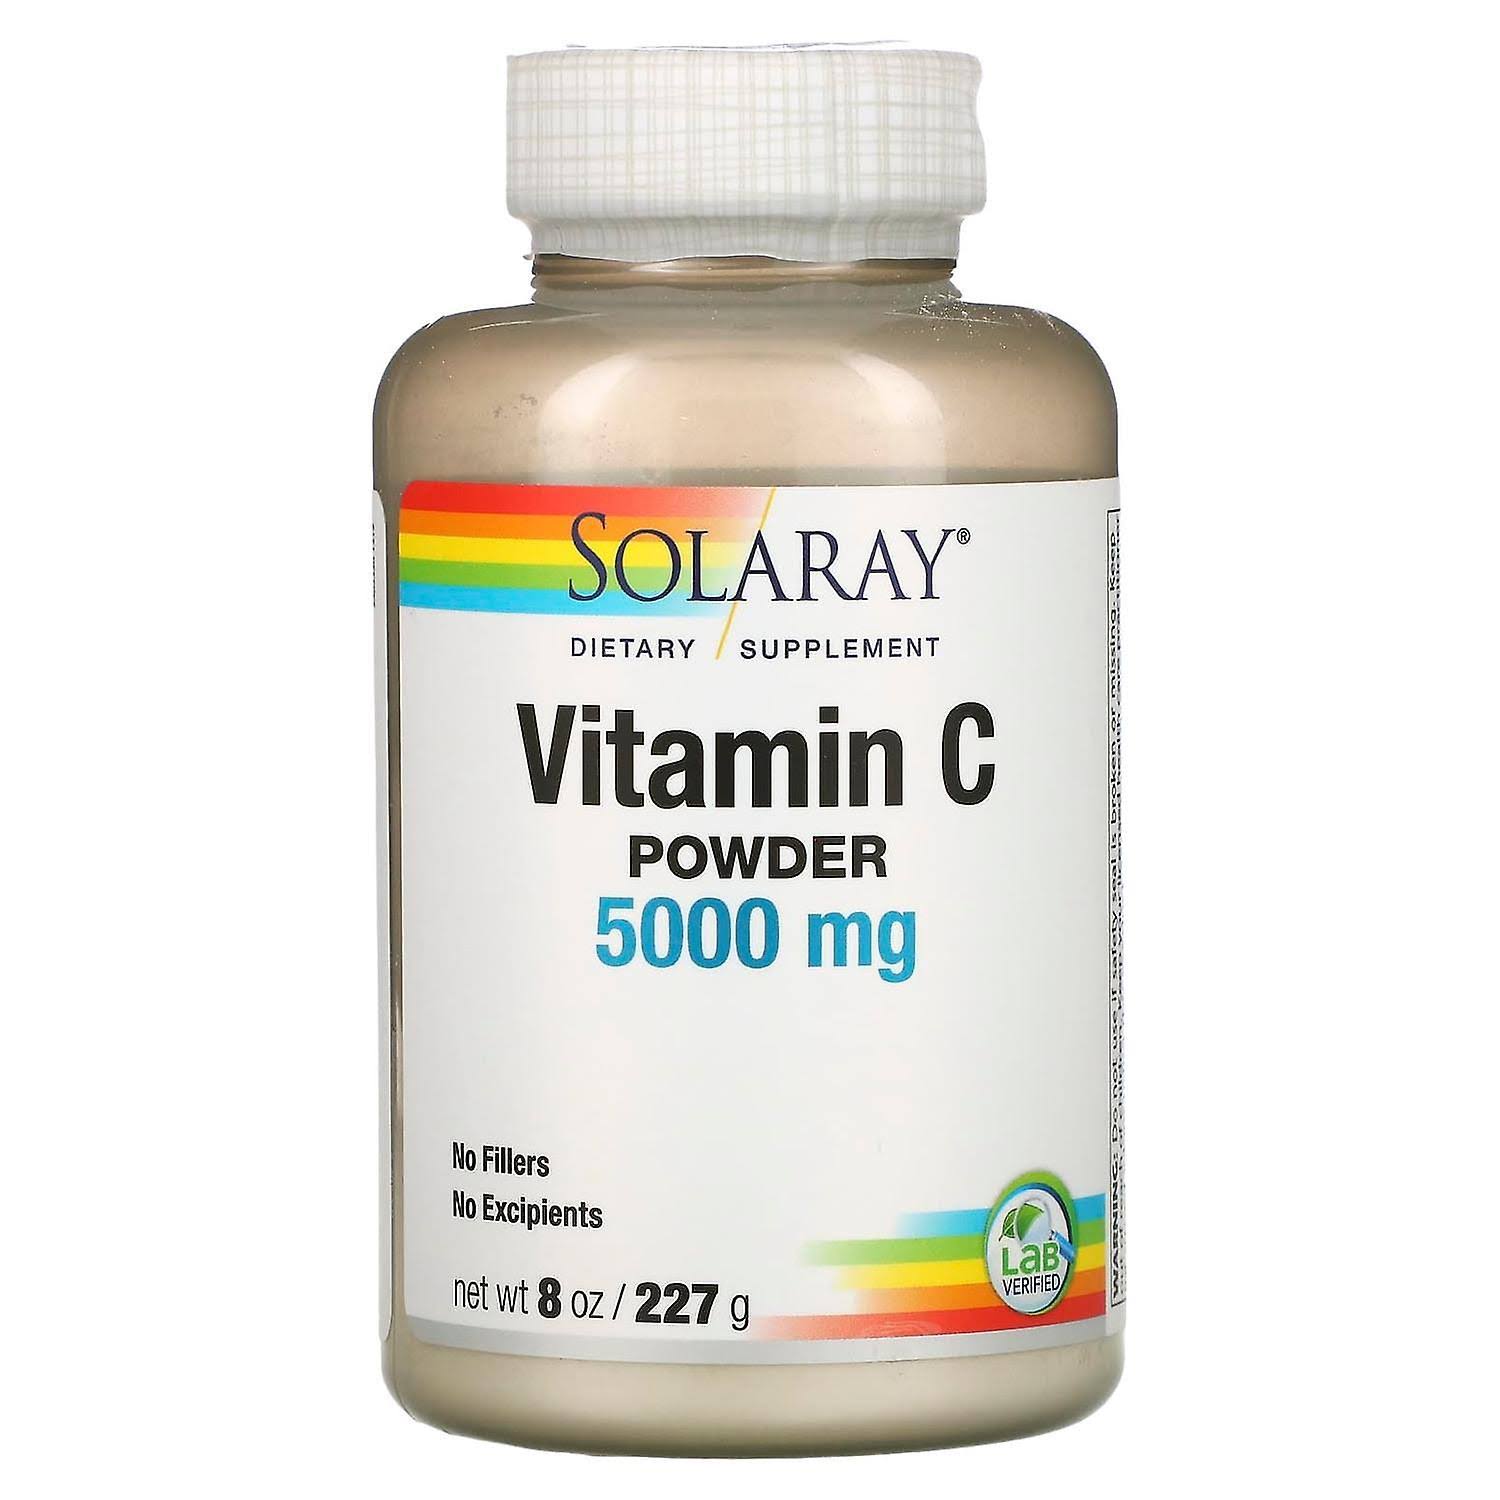 Solaray Vitamin C Powder - 5000mg, 227g